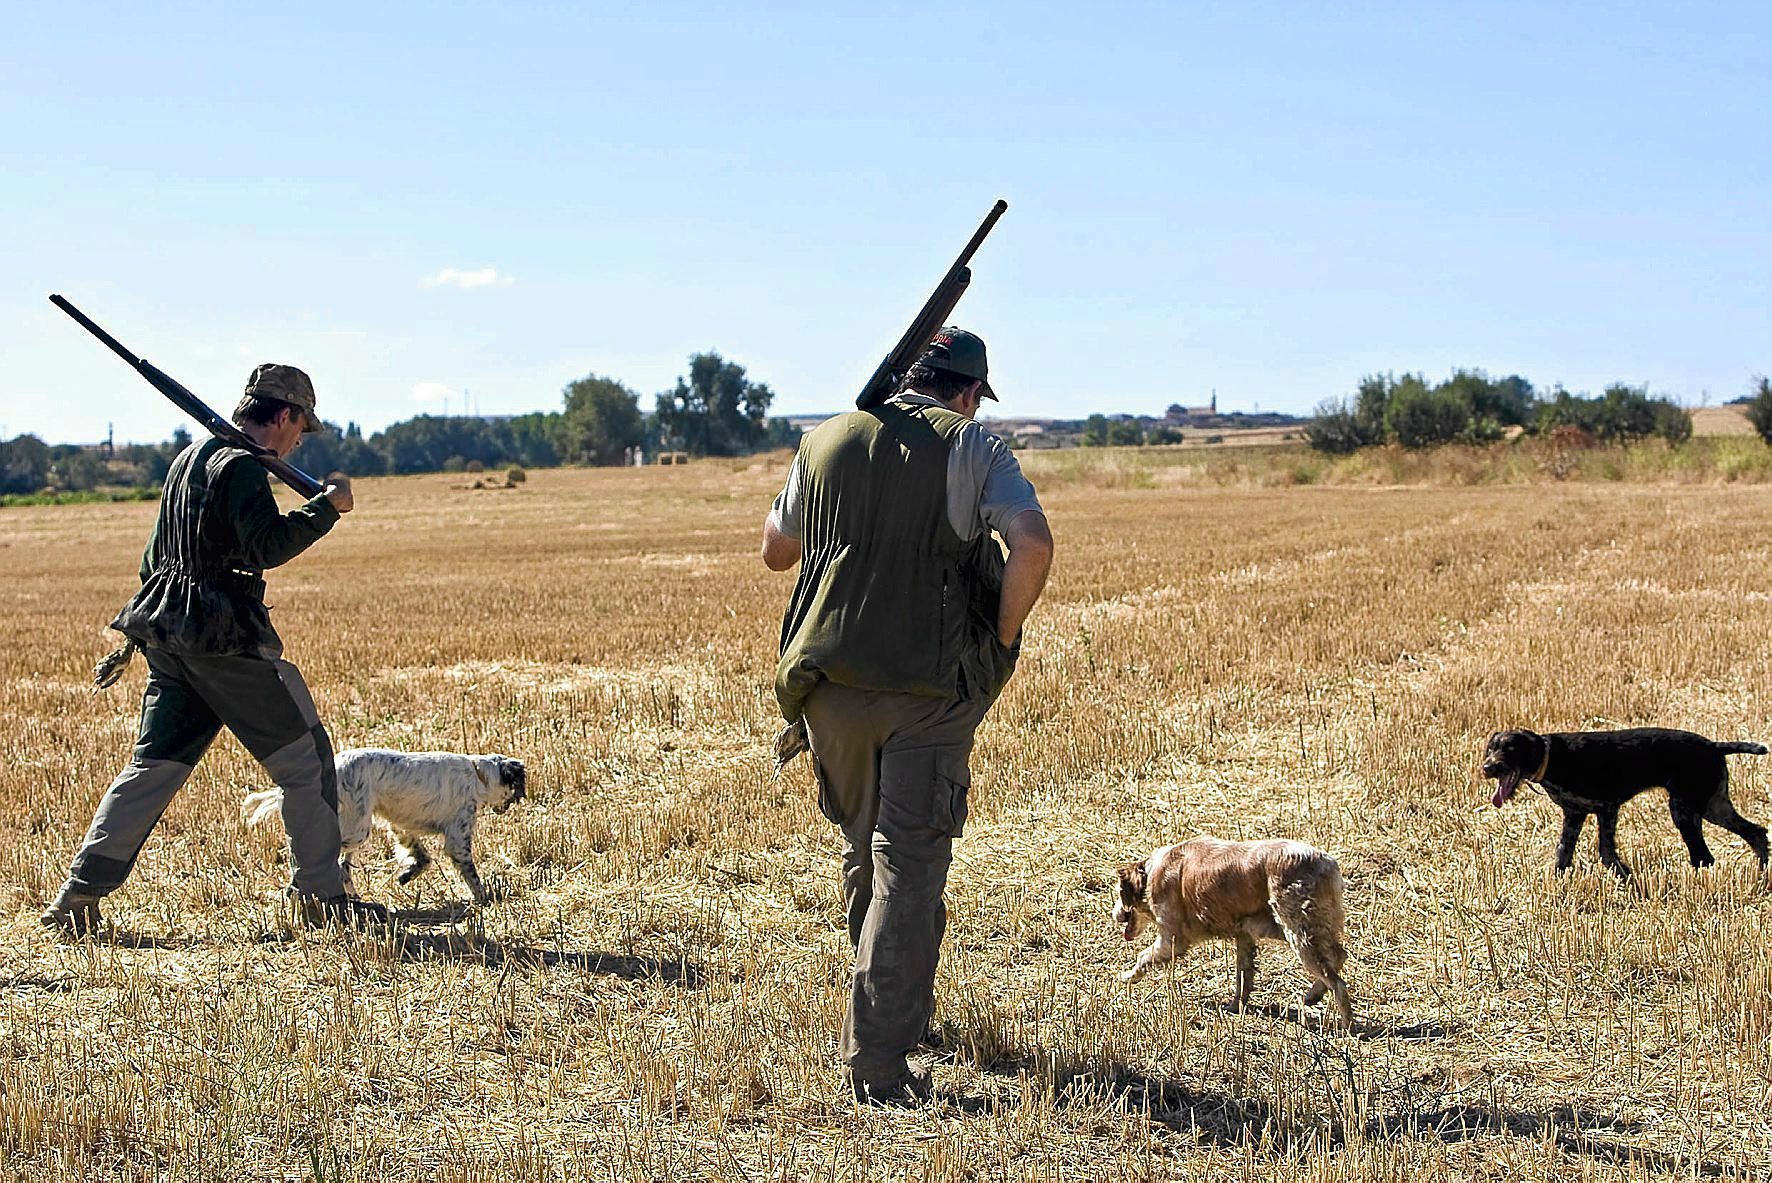 La futura Ley de Bienestar Animal equipara a los perros de caza, pastoreo ganadería con los animales domésticos | Medio Ambiente